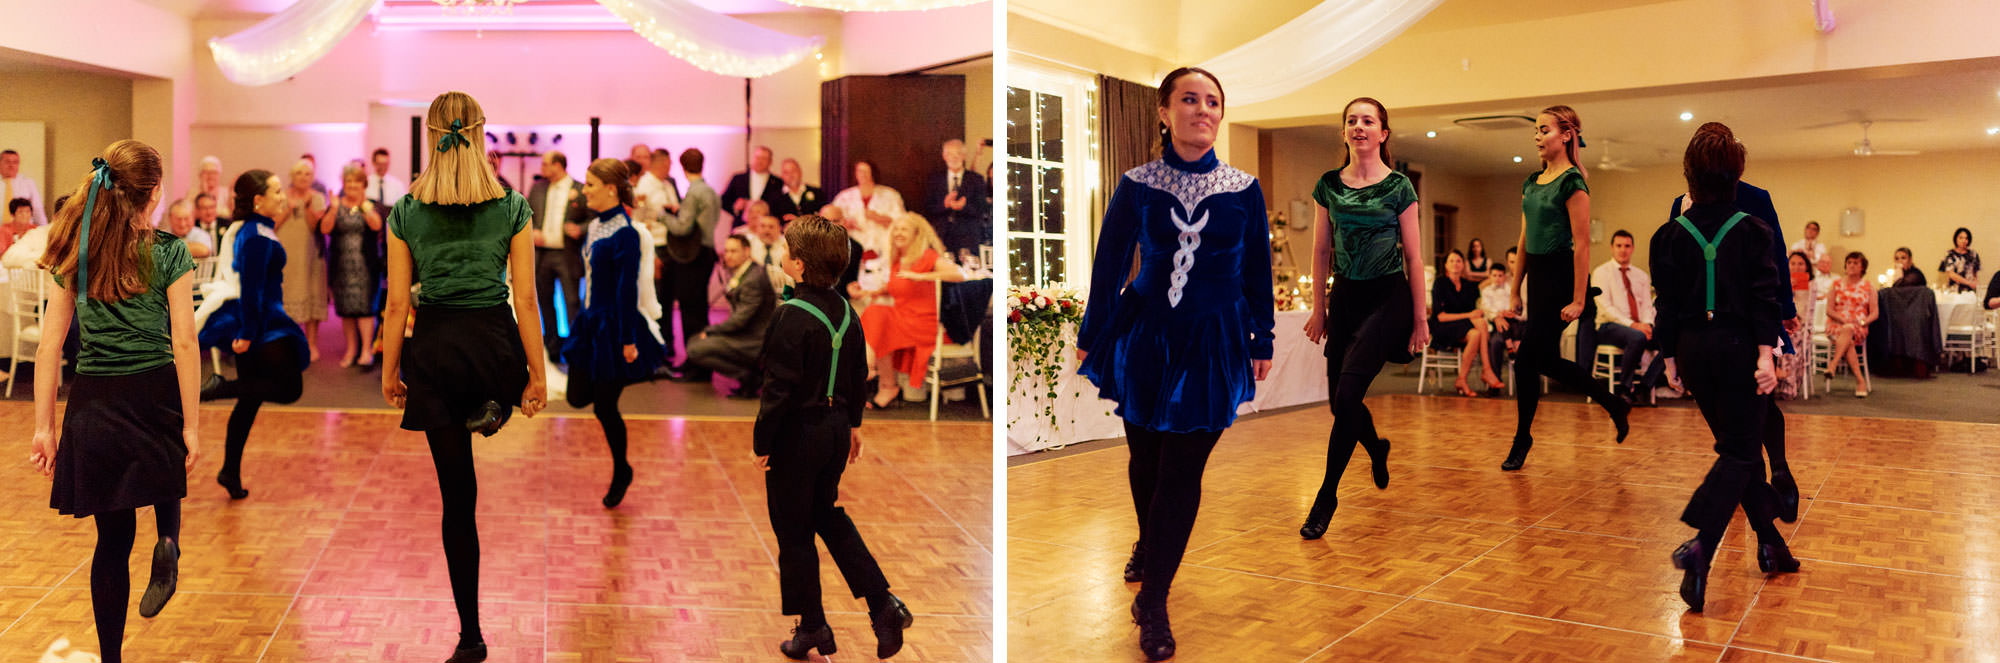 Irish dancing during Craigieburn wedding reception